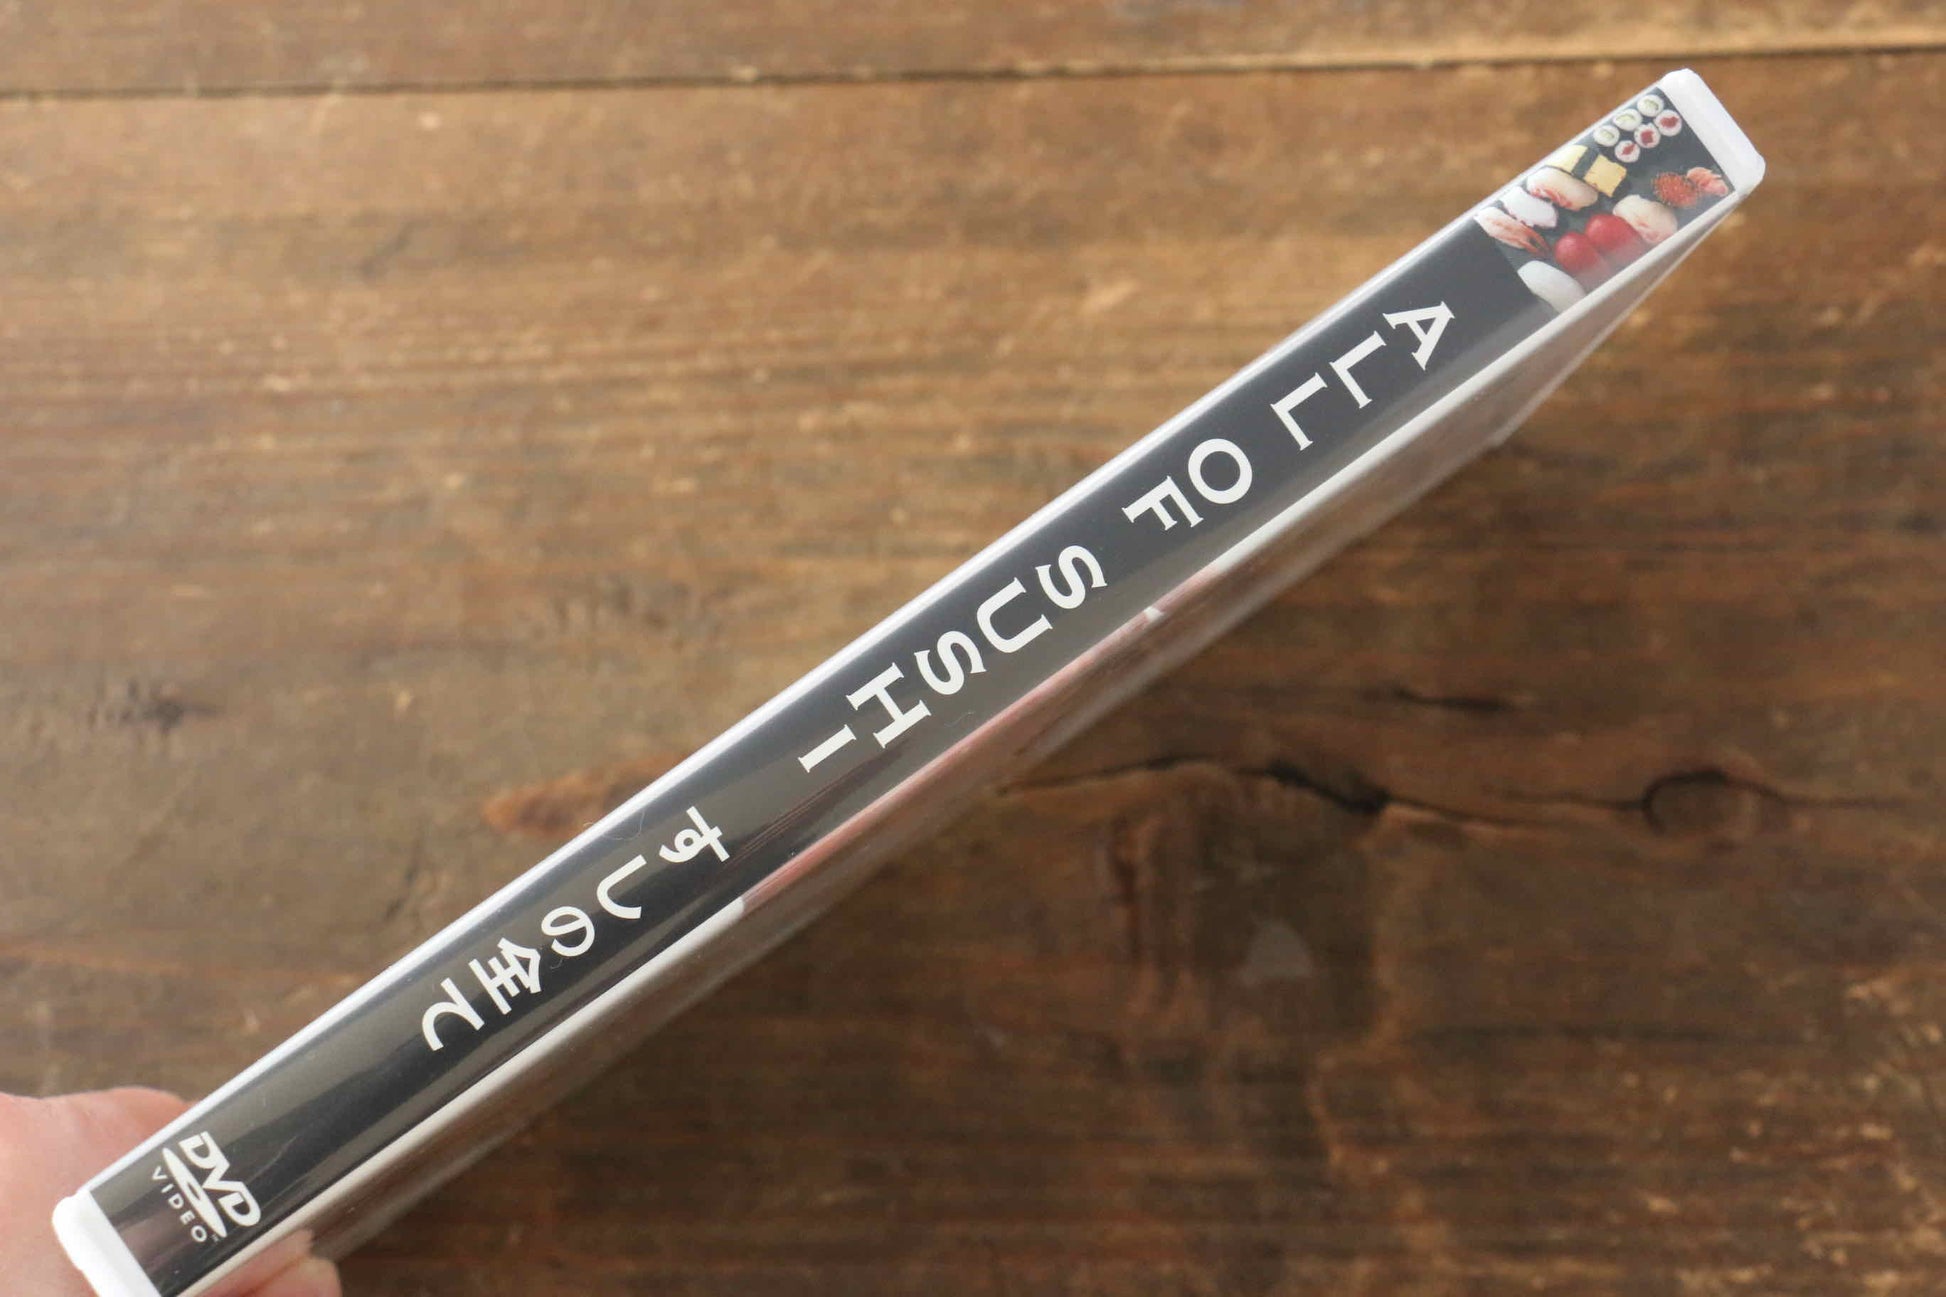 ALL OF SUSHI すしの全て DVD - 清助刃物